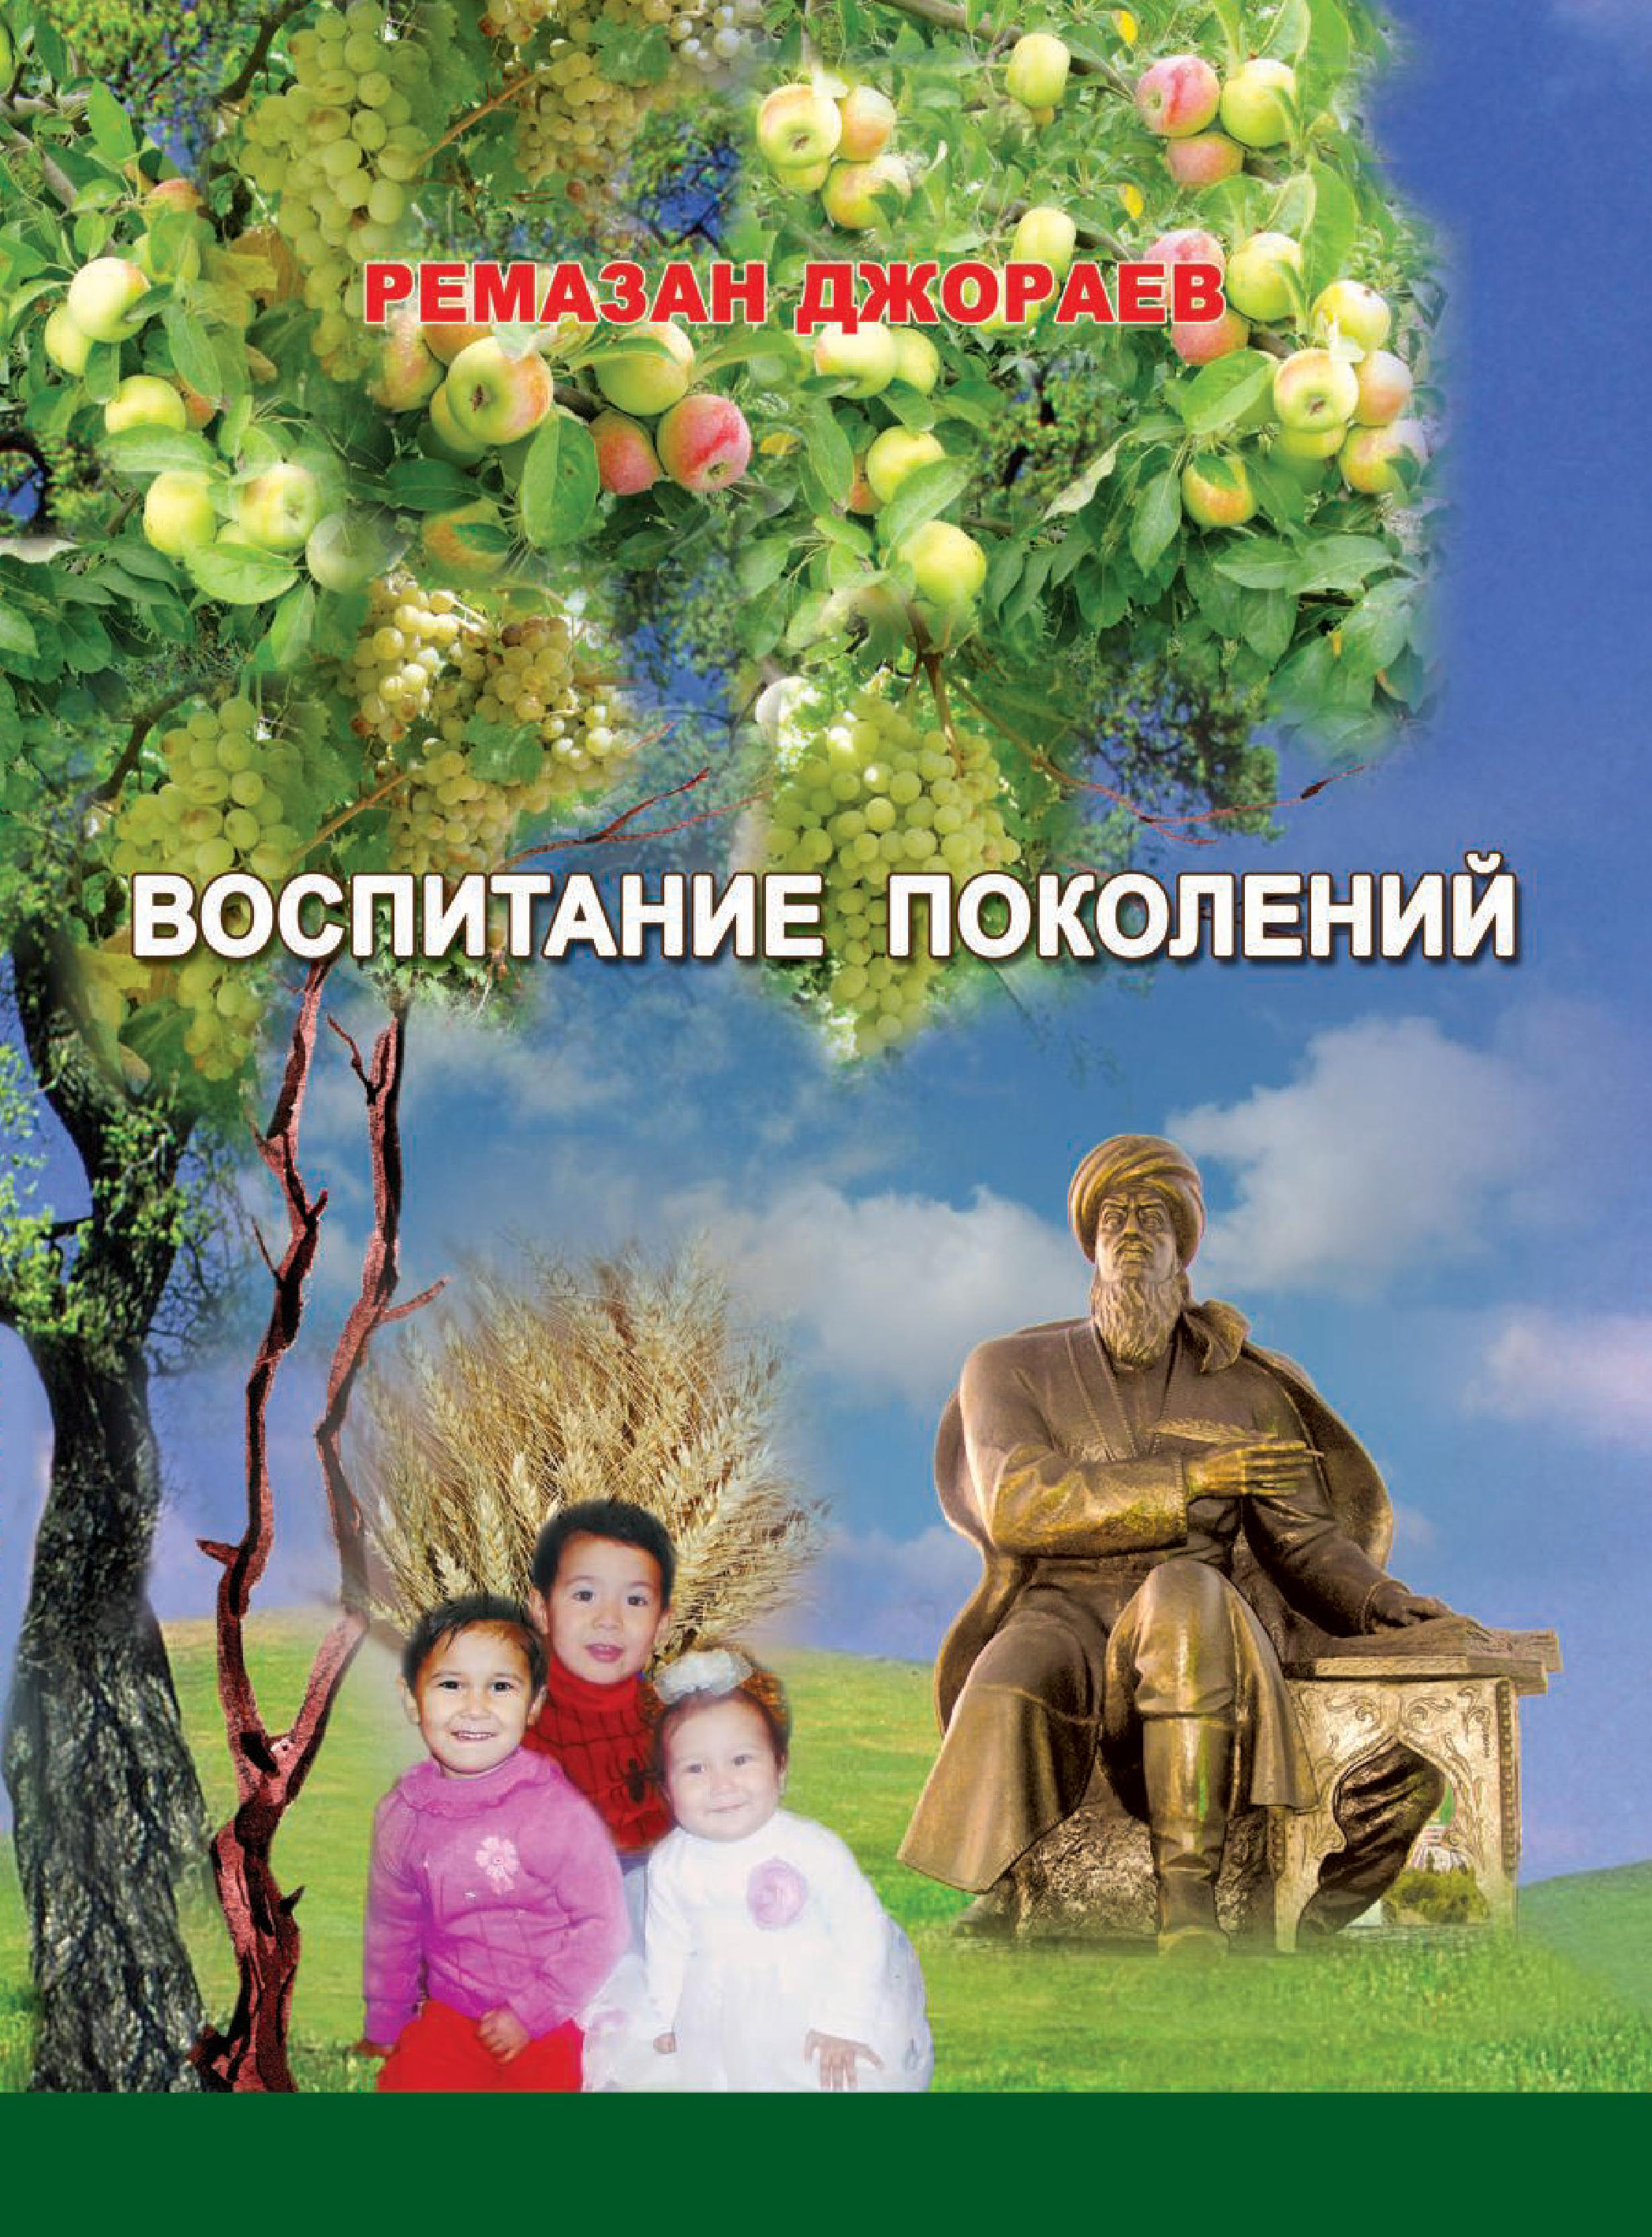 Книга Воспитание поколений из серии , созданная Ремазан Джораев, может относится к жанру Воспитание детей, Педагогика. Стоимость книги Воспитание поколений  с идентификатором 10393884 составляет 149.00 руб.